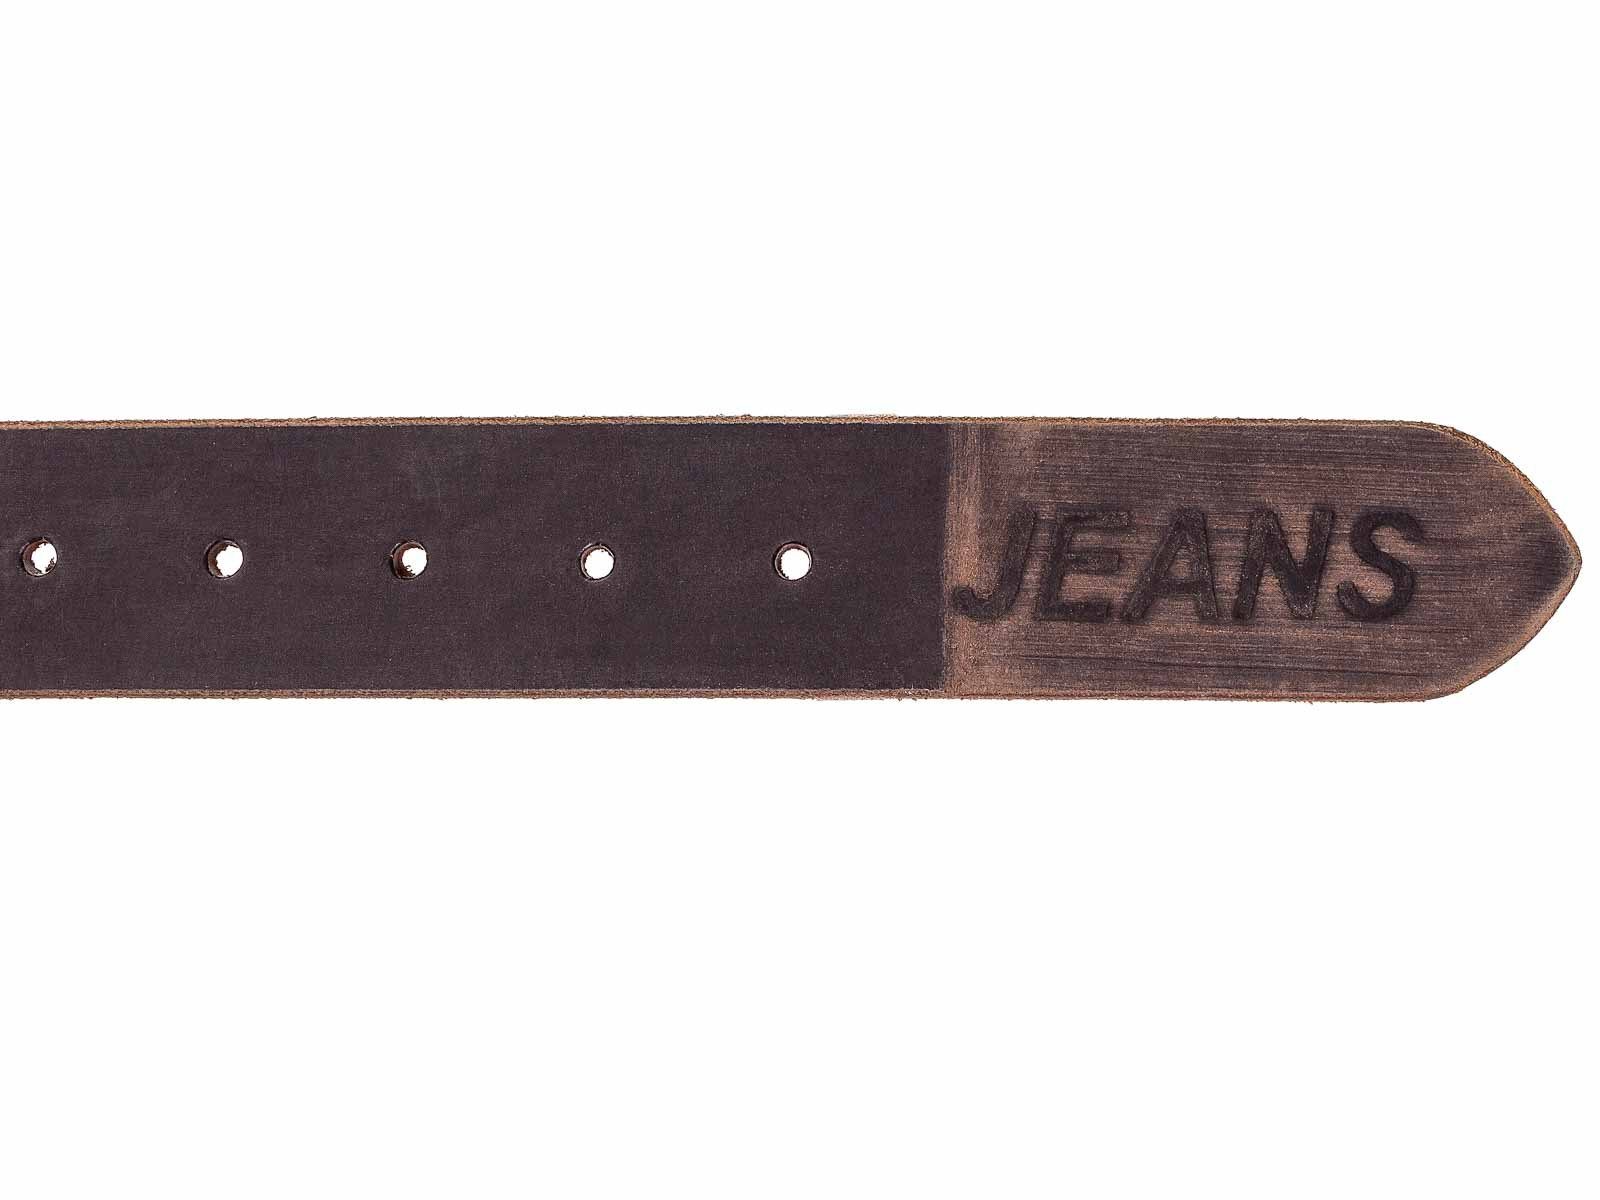 JSI G1 dunkelbraun Gürtel Jeans Ledergürtel Prägung